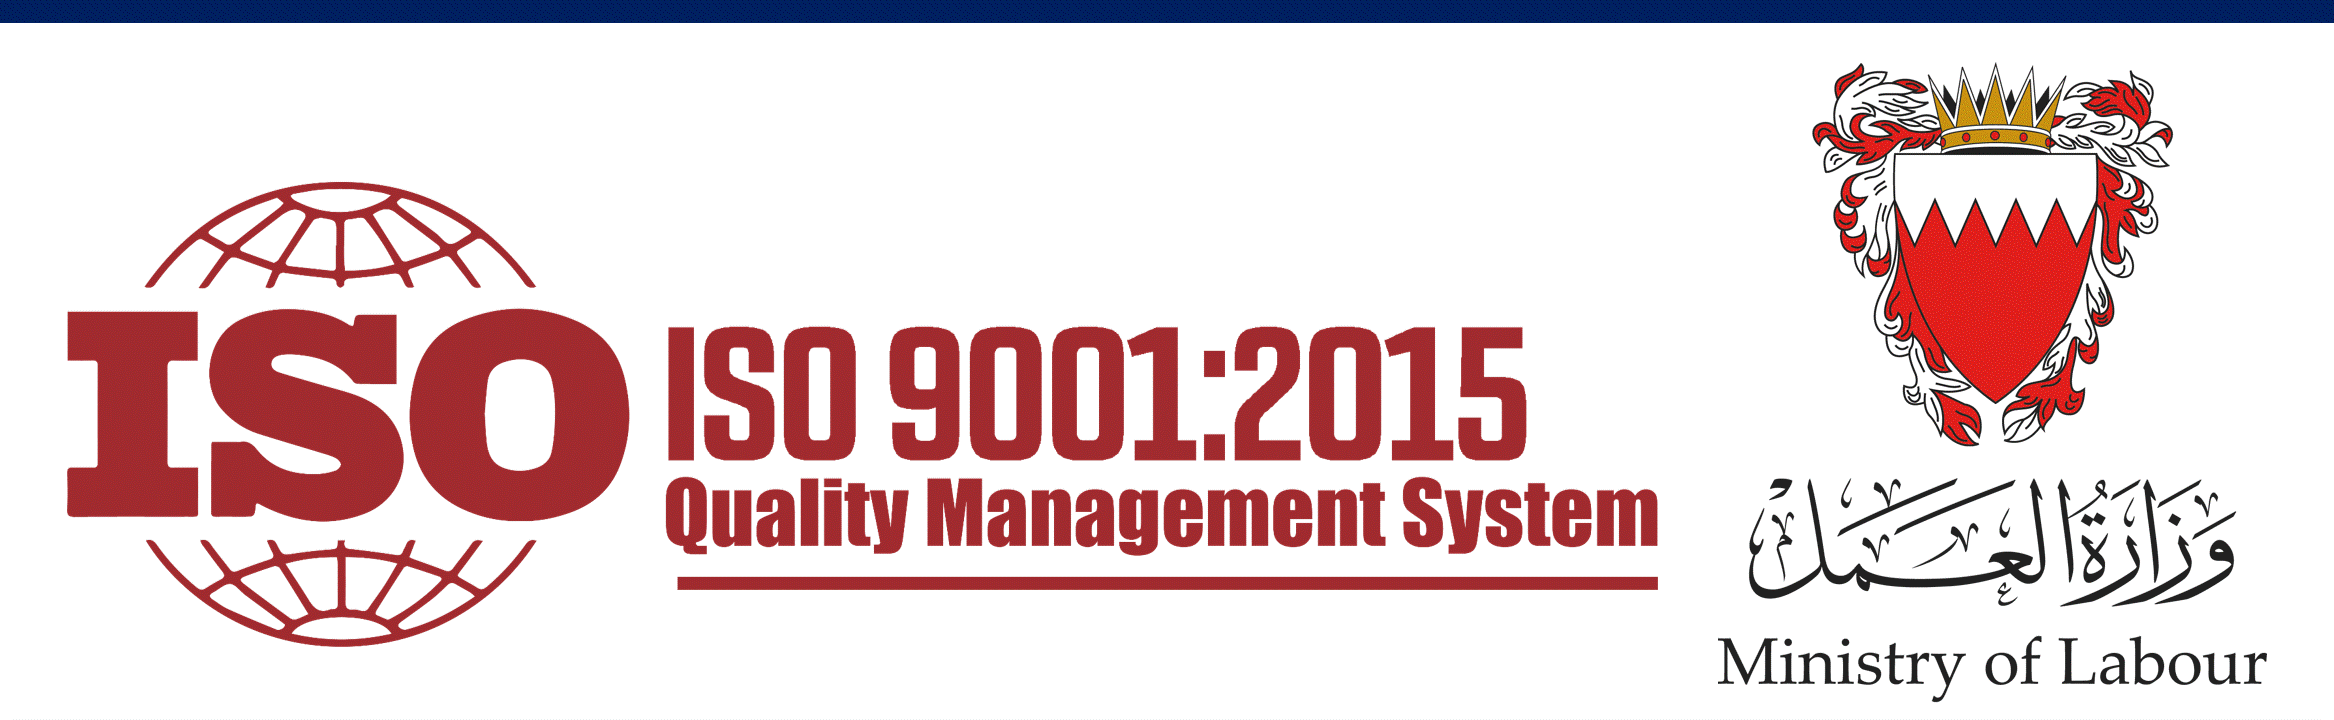 MOL-ISO 9001:2015